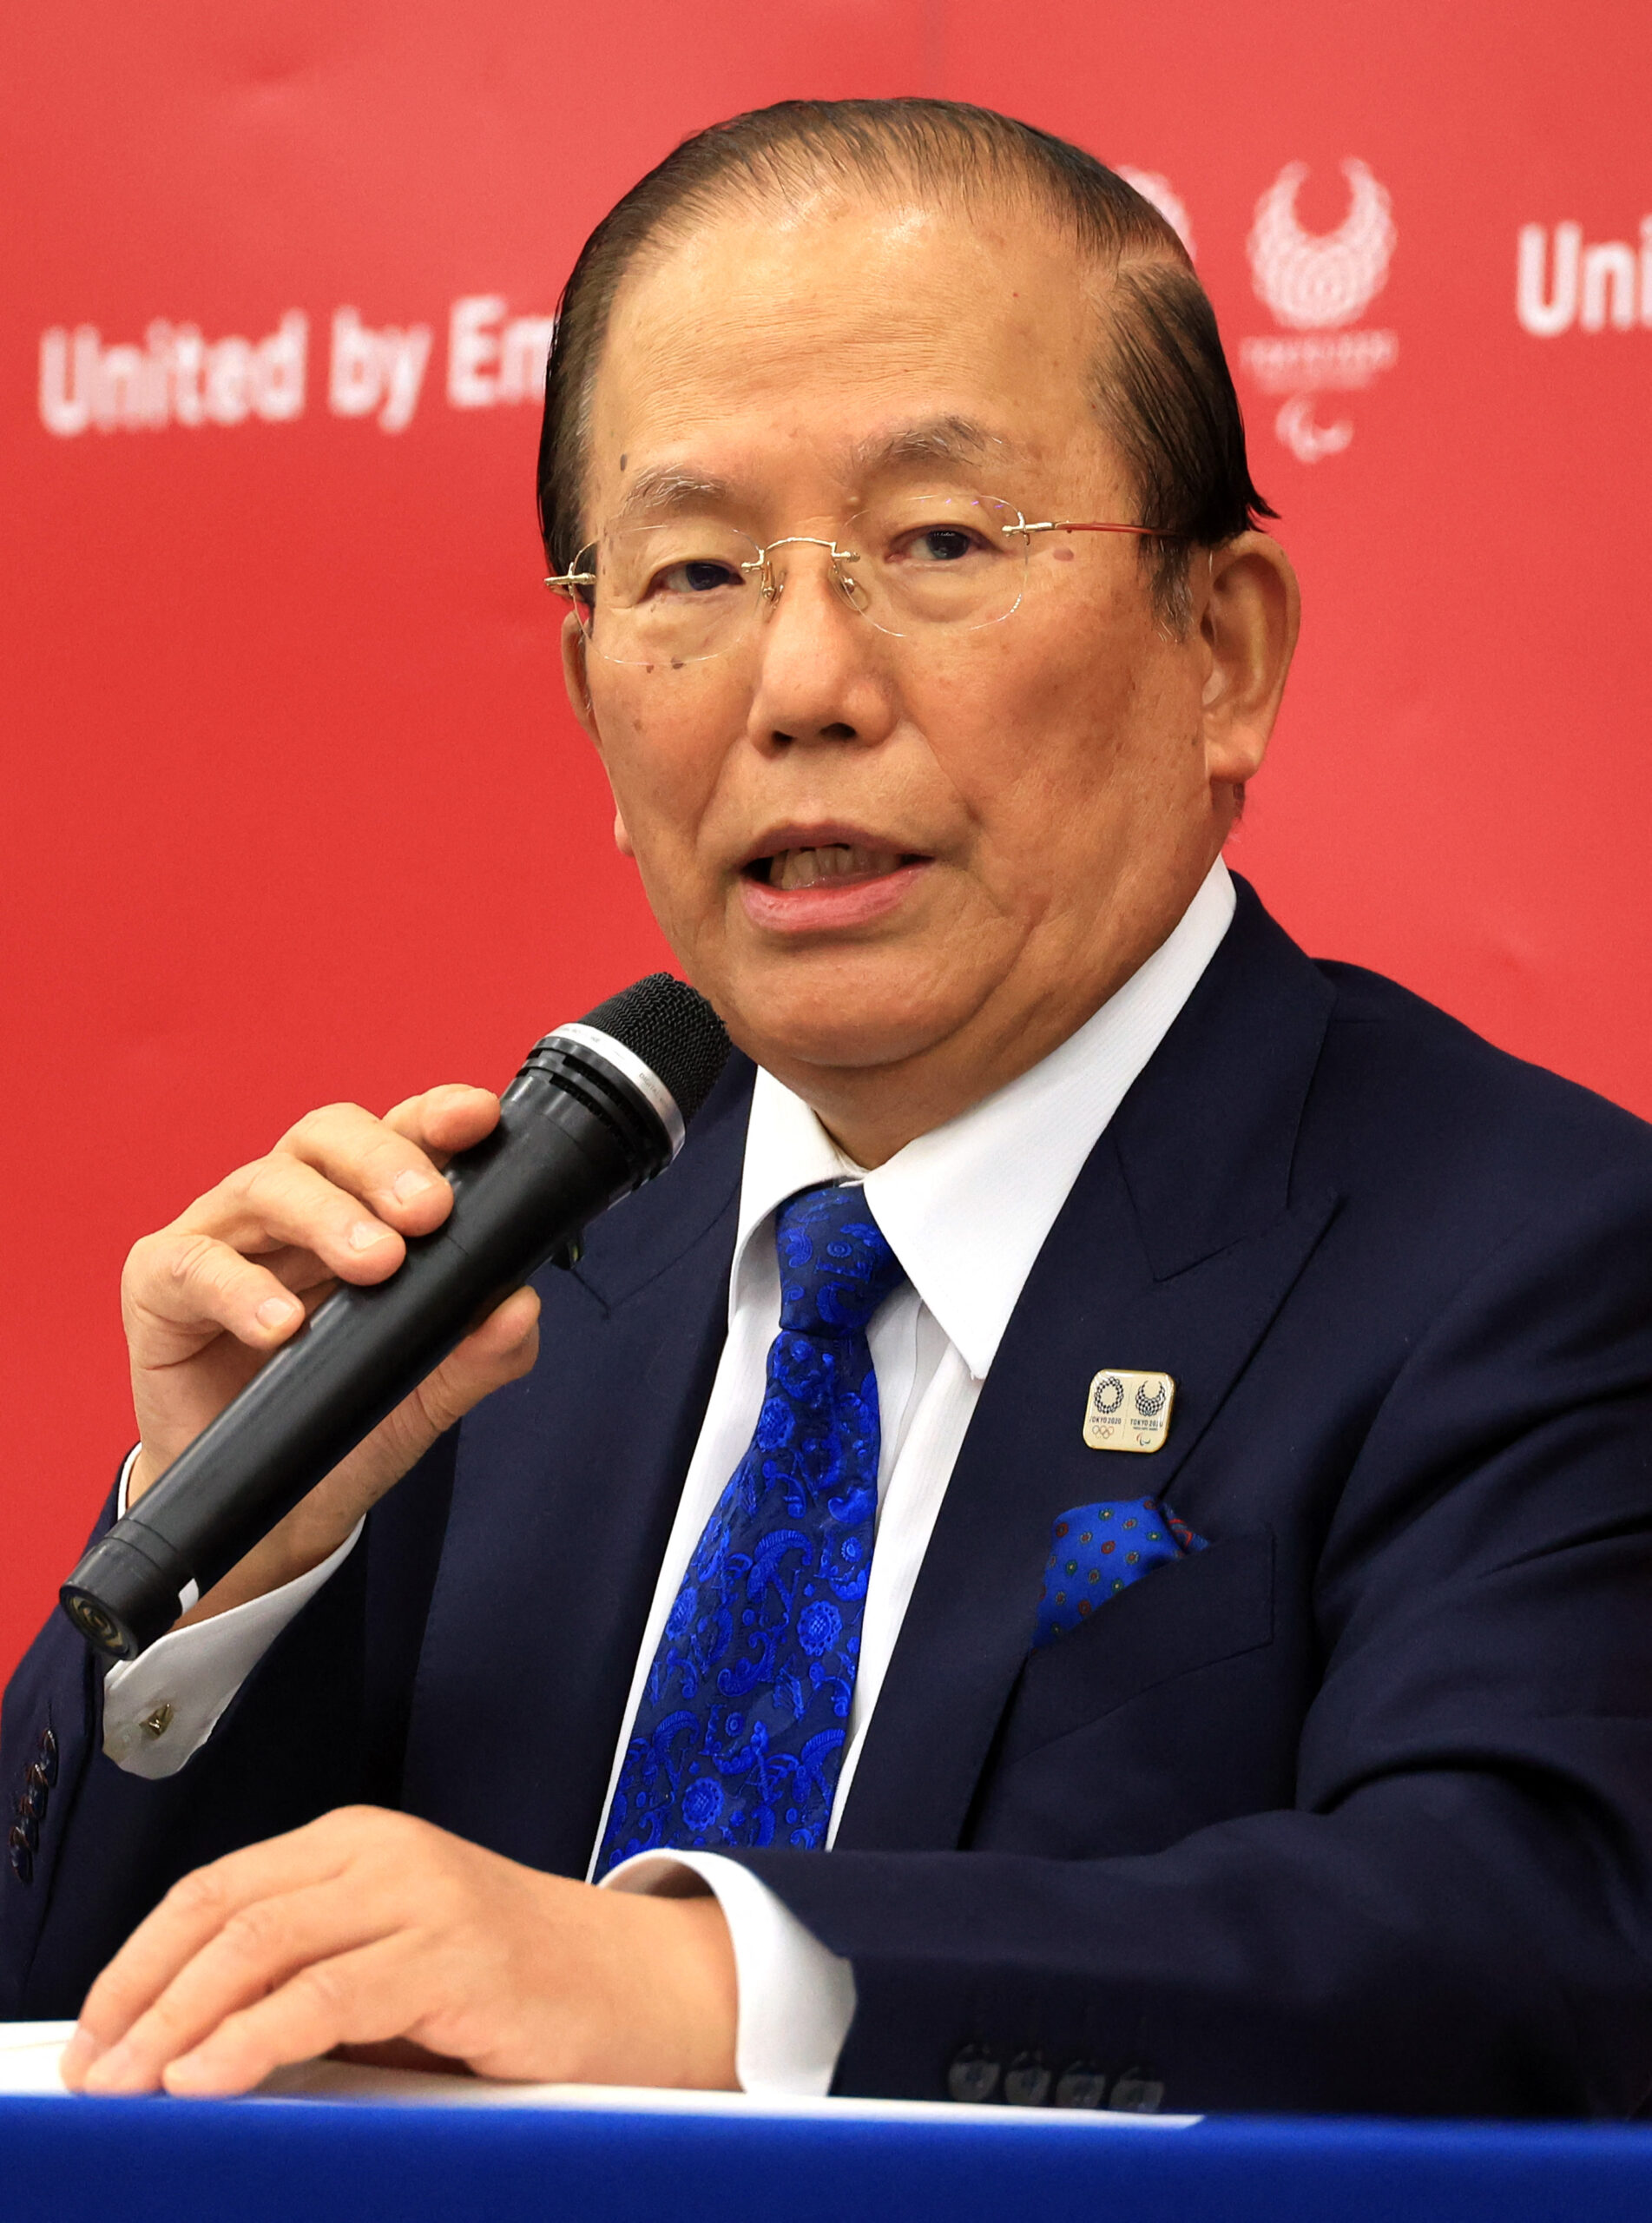 El presidente de los Juegos Olímpicos de Tokio 2020 dimite por comentarios sexistas